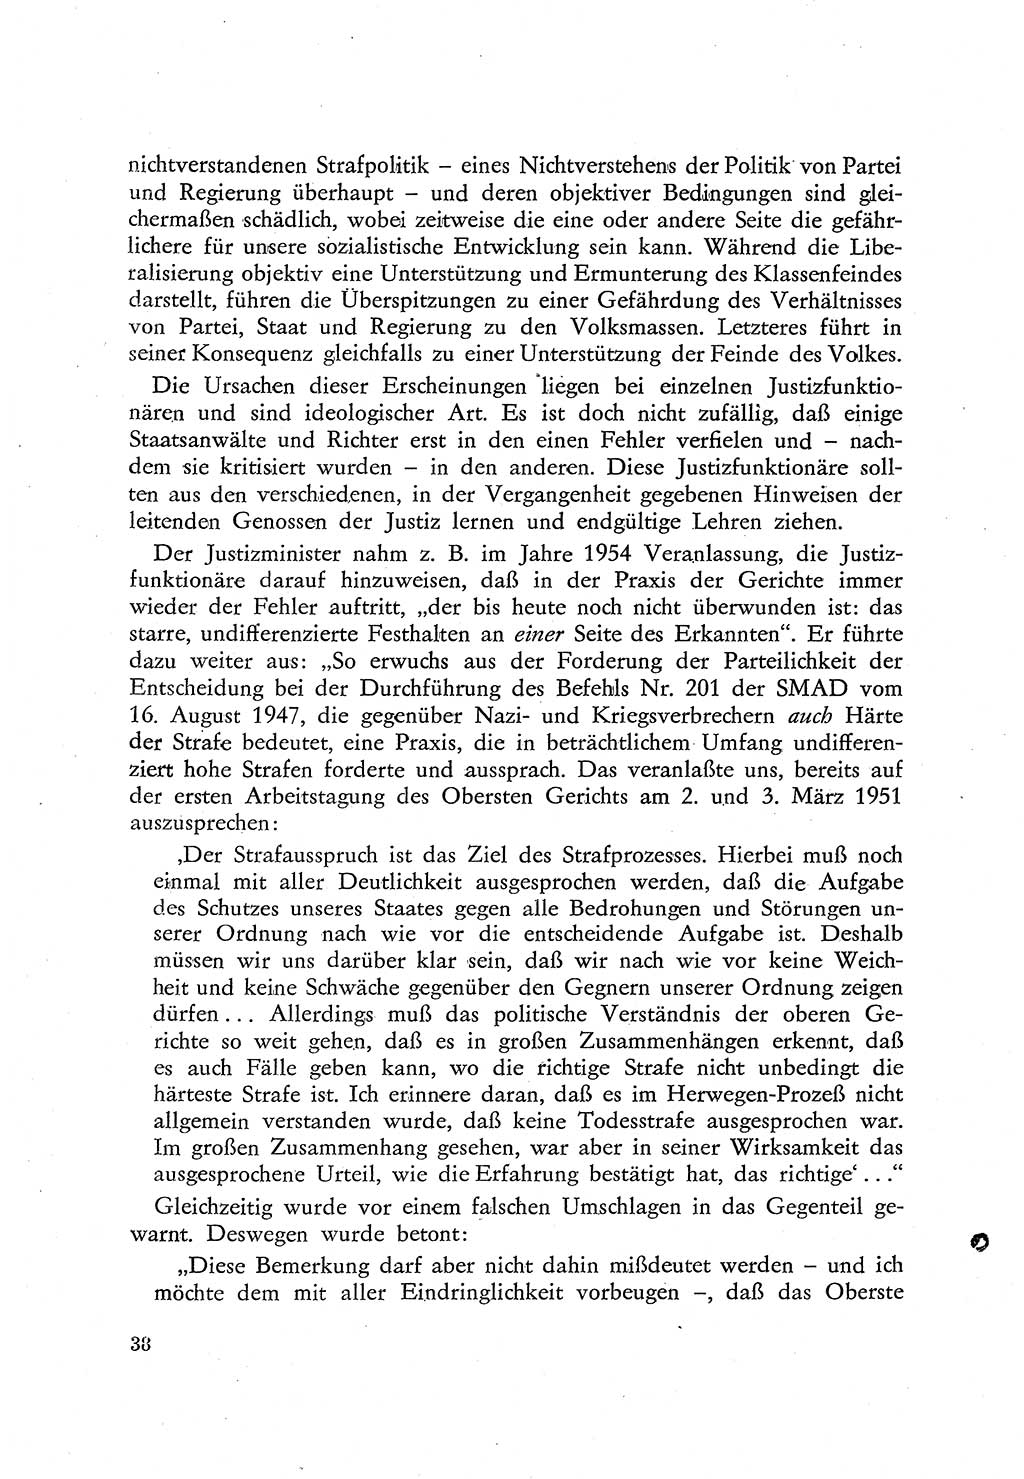 Beiträge zum Strafrecht [Deutsche Demokratische Republik (DDR)], Staatsverbrechen 1959, Seite 38 (Beitr. Strafr. DDR St.-Verbr. 1959, S. 38)